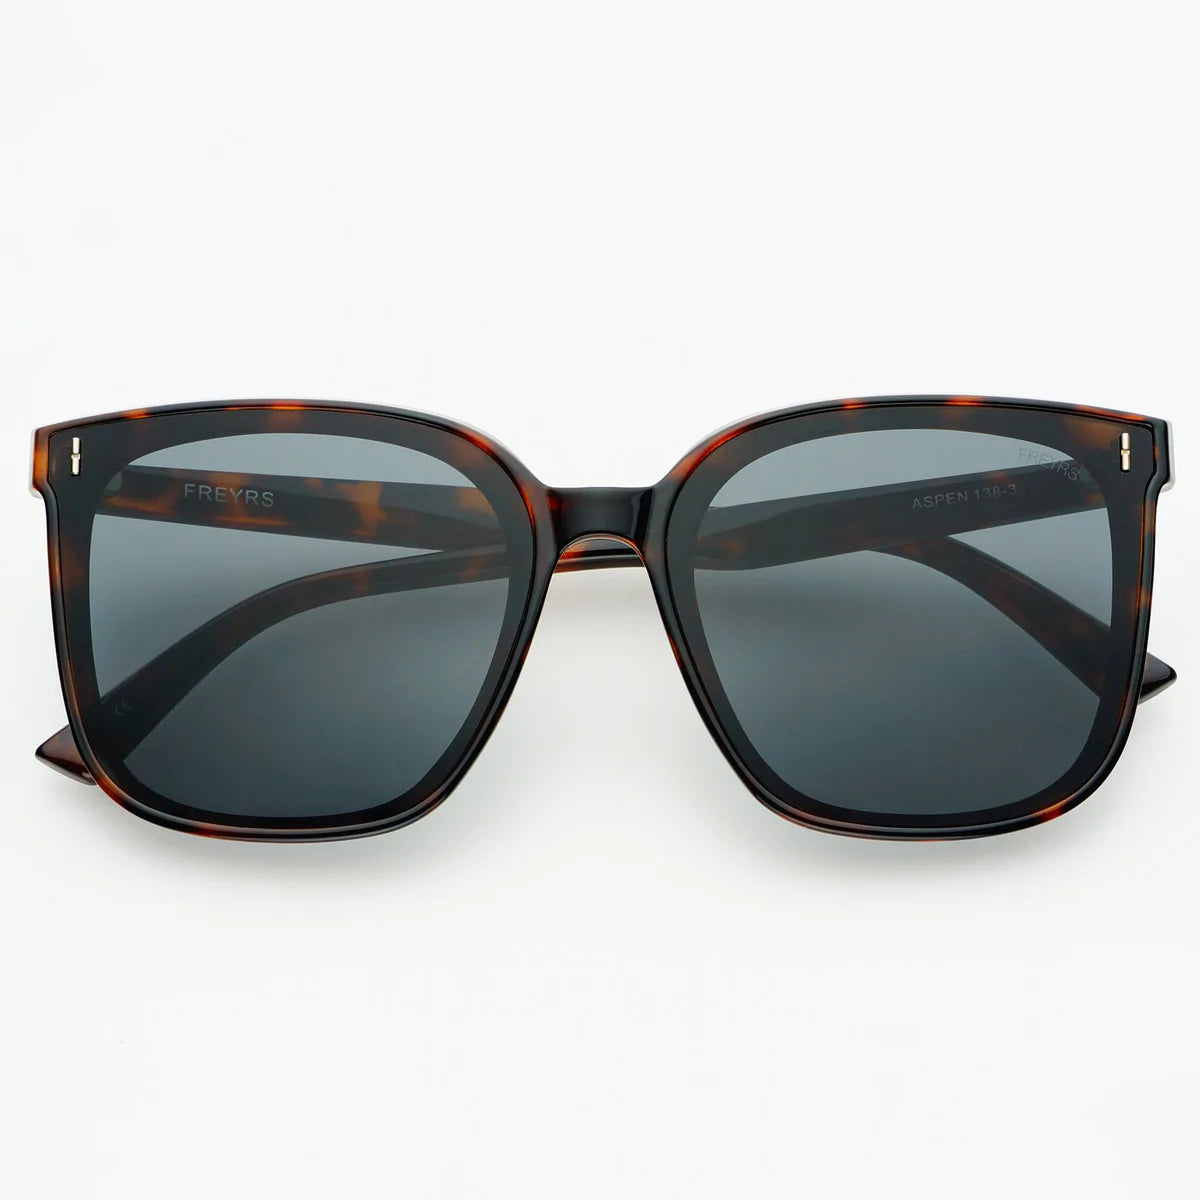 Sunglasses- Aspen Tortise (138-3)